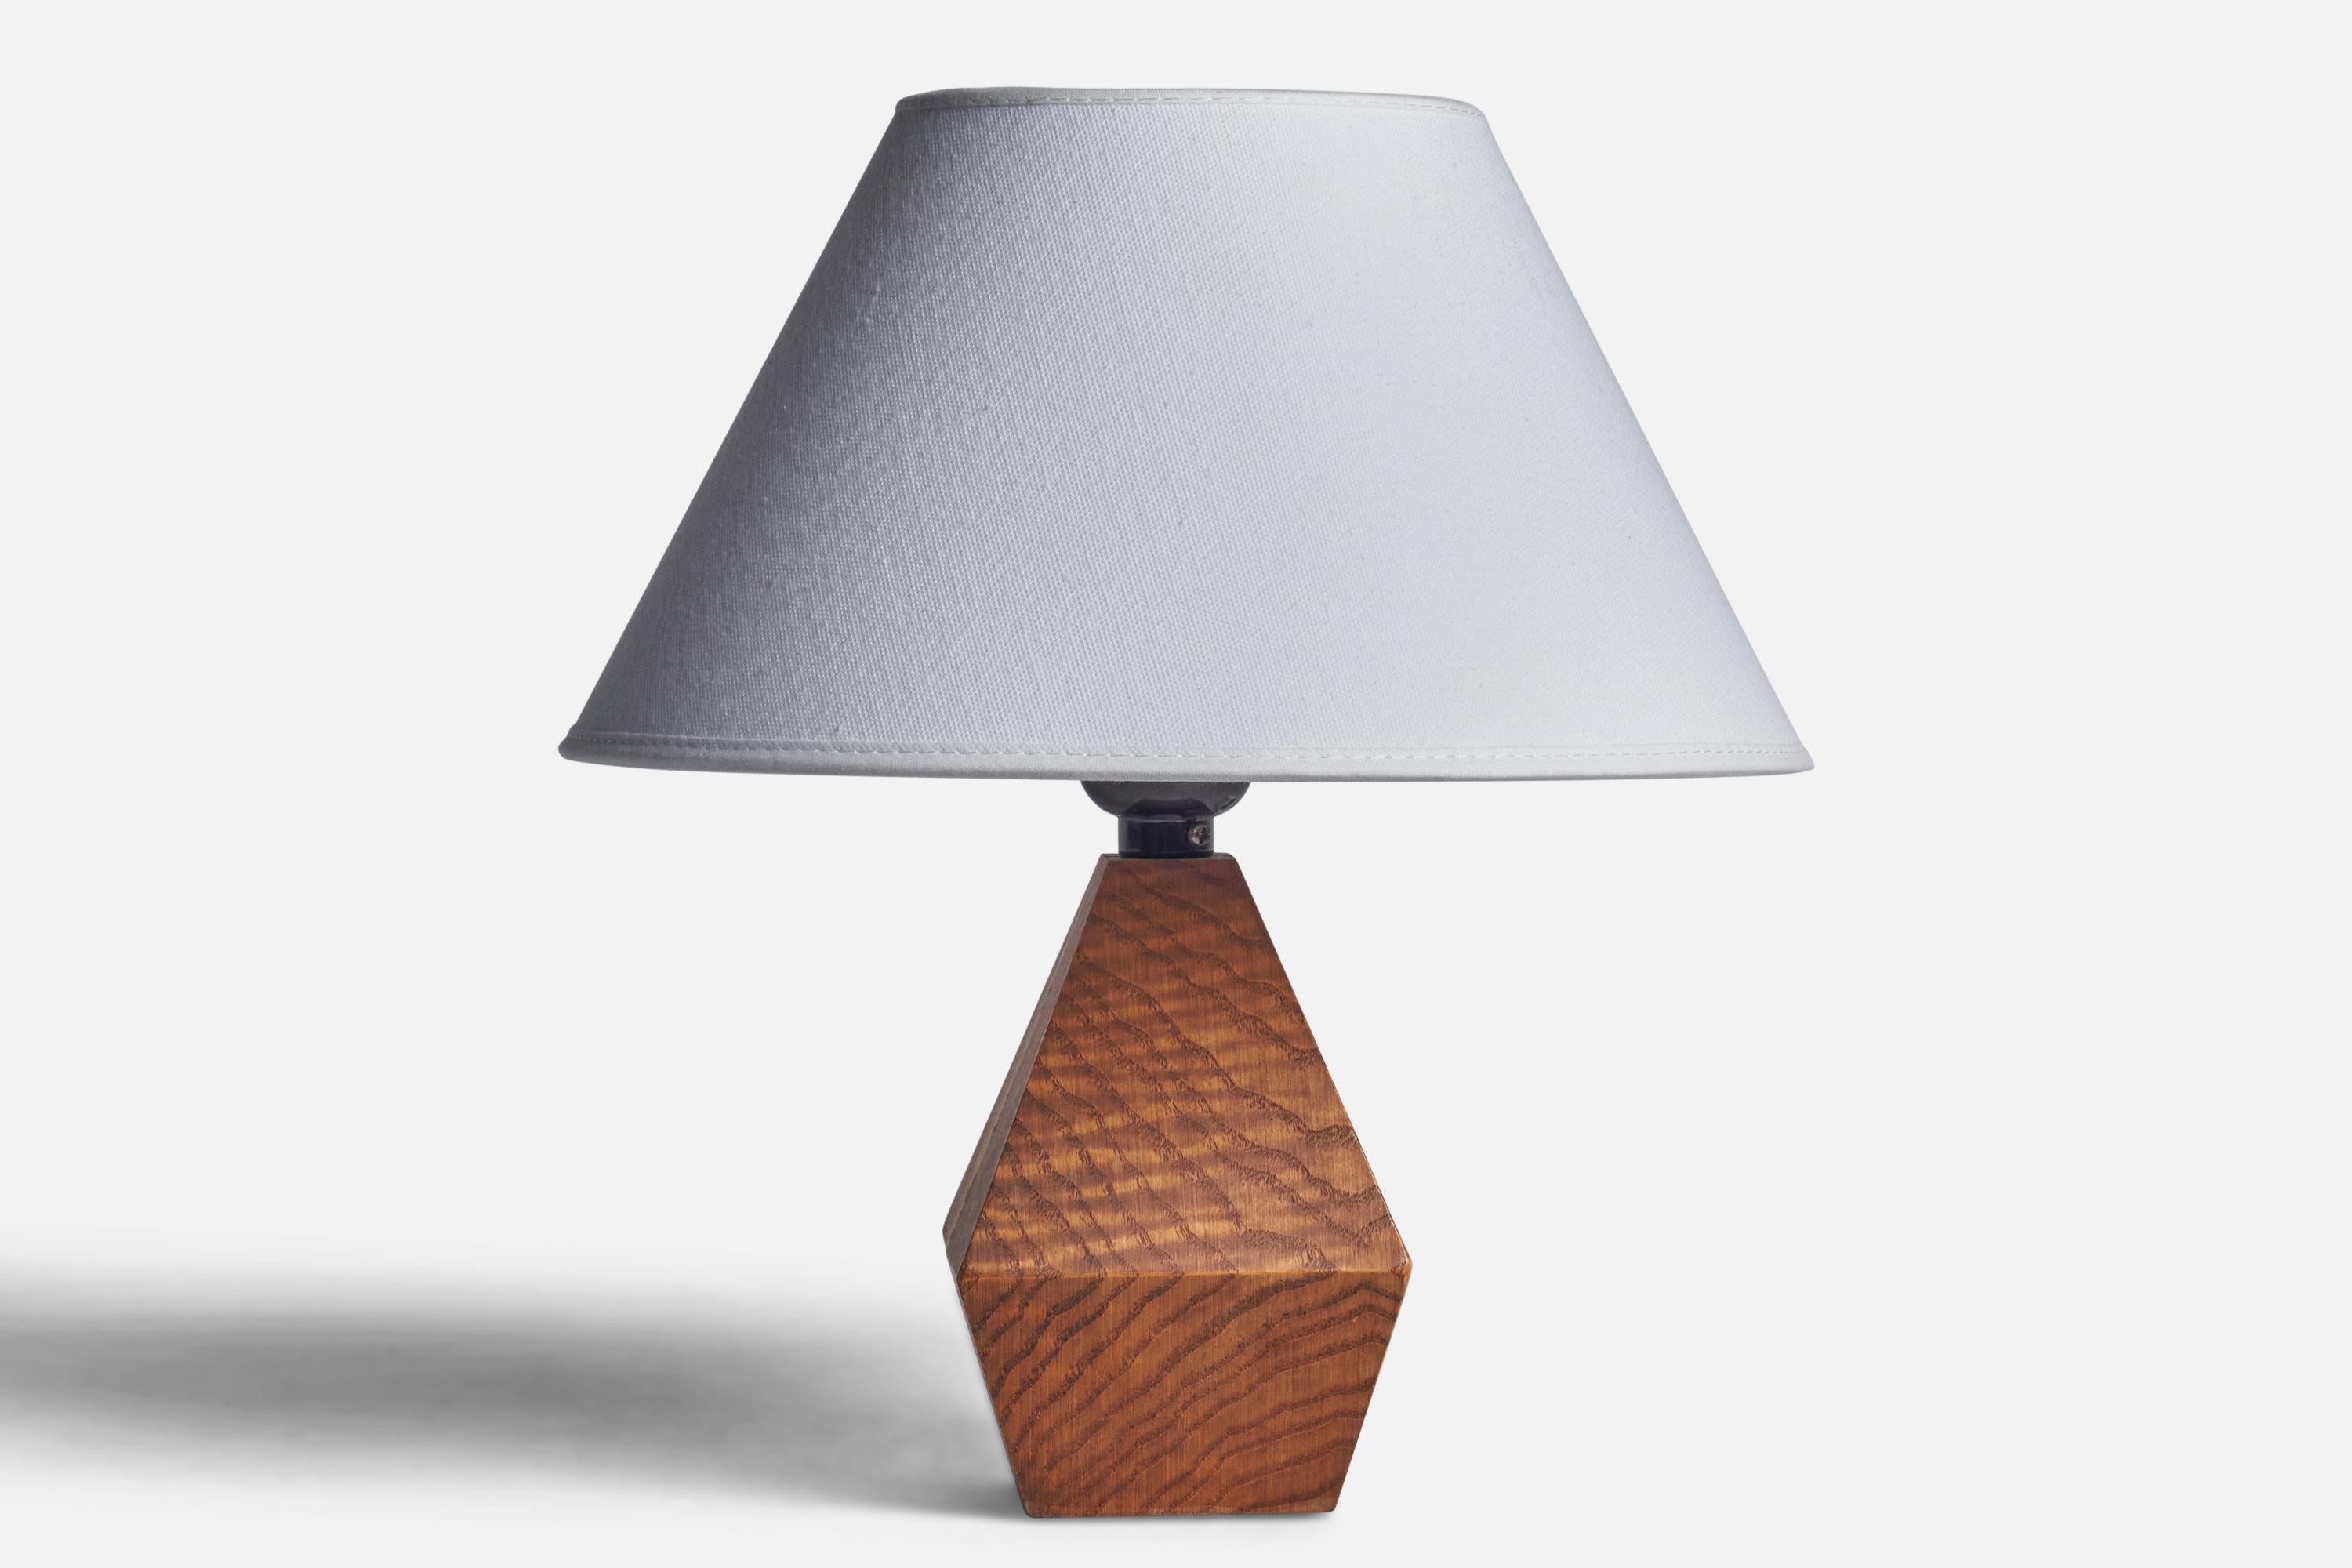 Lampe de table en pin conçue et produite en Suède, années 1960.

Dimensions de la lampe (pouces) : 8